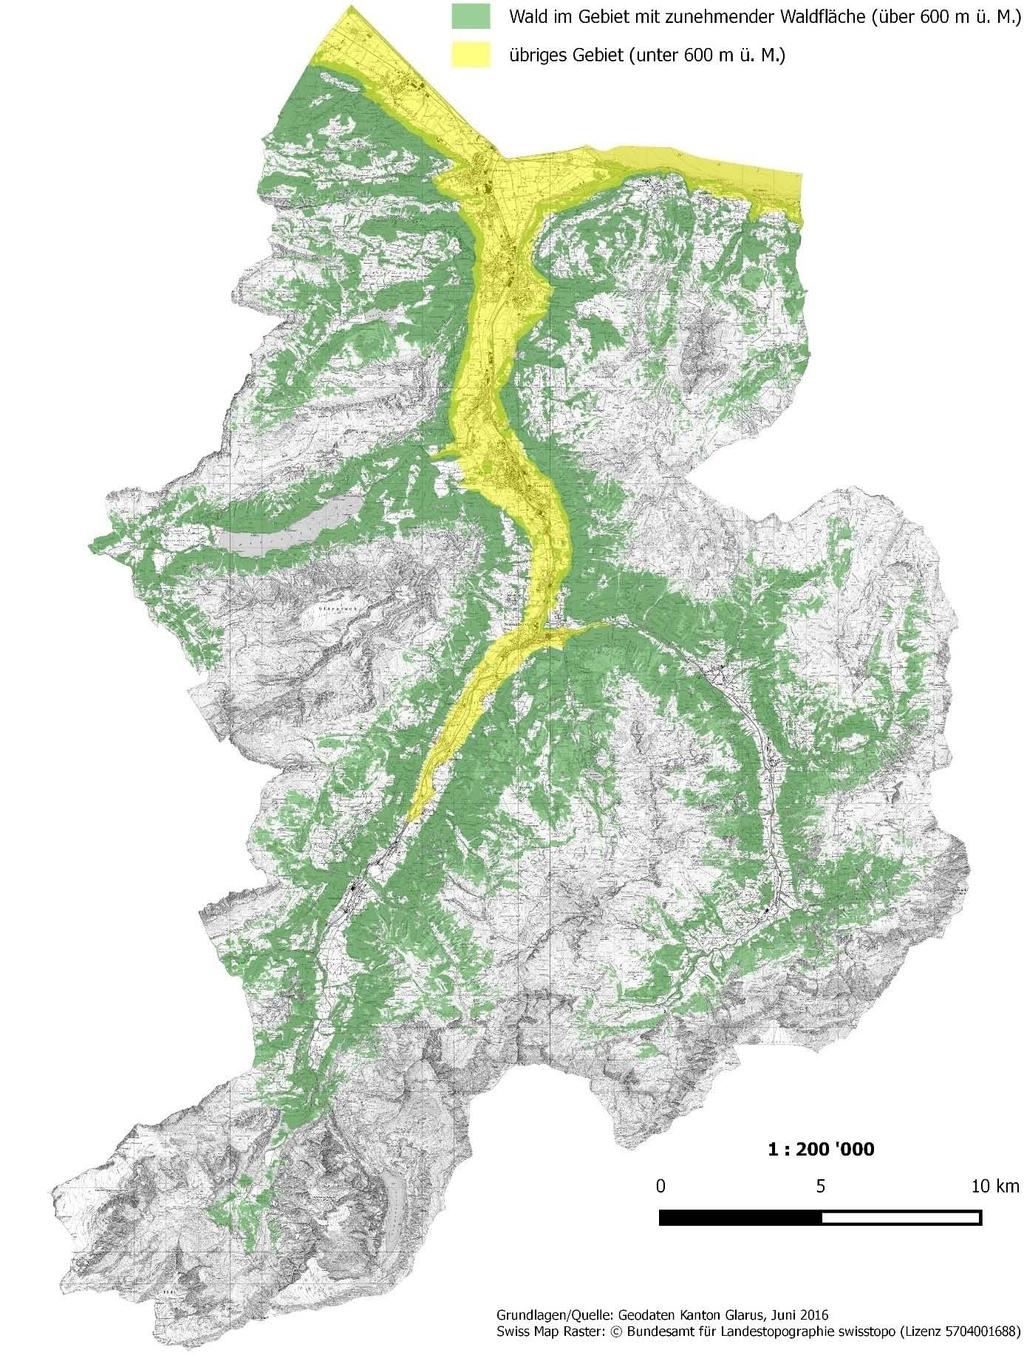 Gebiete mit zunehmender Waldfläche im Kanton Glarus Gemäss Art. 7 Abs. 2 WaG und Art. 8a WaV Karte: Gebiete mit zunehmender Waldfläche und übrige Gebiete gemäss Art. 7 WaG und Art. 8a WaV. In den Gebieten mit zunehmender Waldfläche ab 600 m ü.